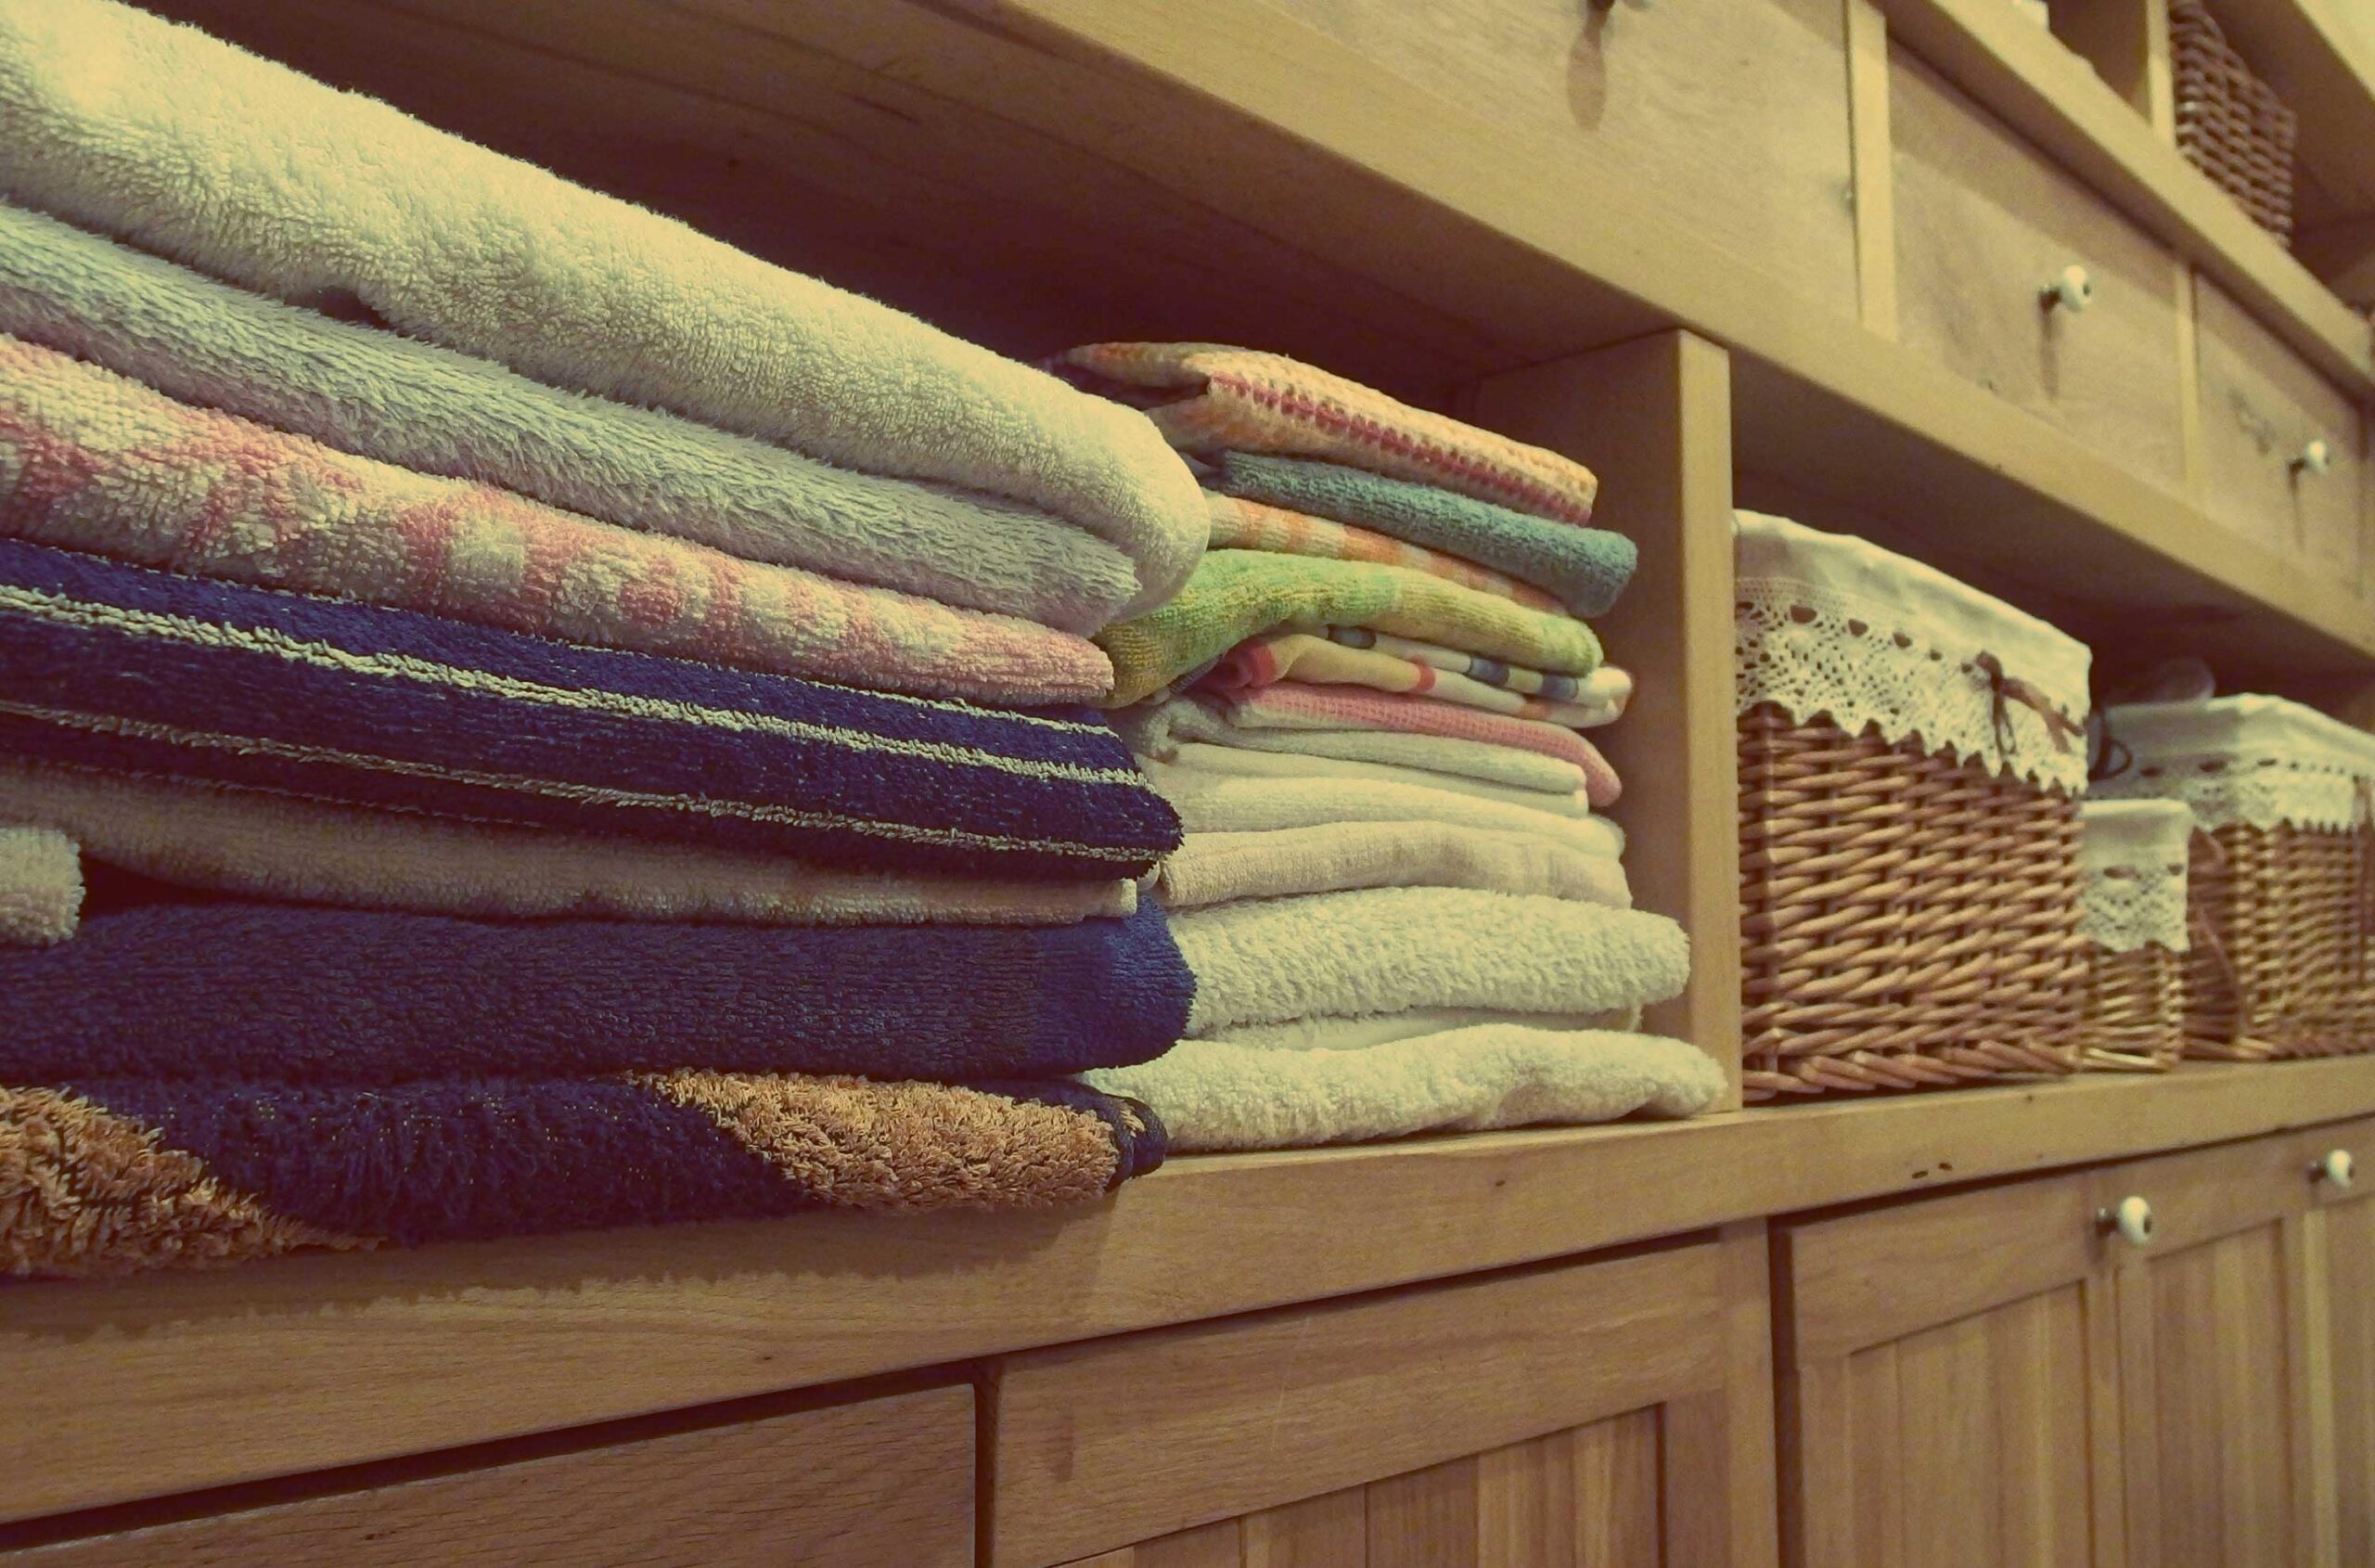 Porta asciugamani e porta accappatoio fai da te #homemade #faidate